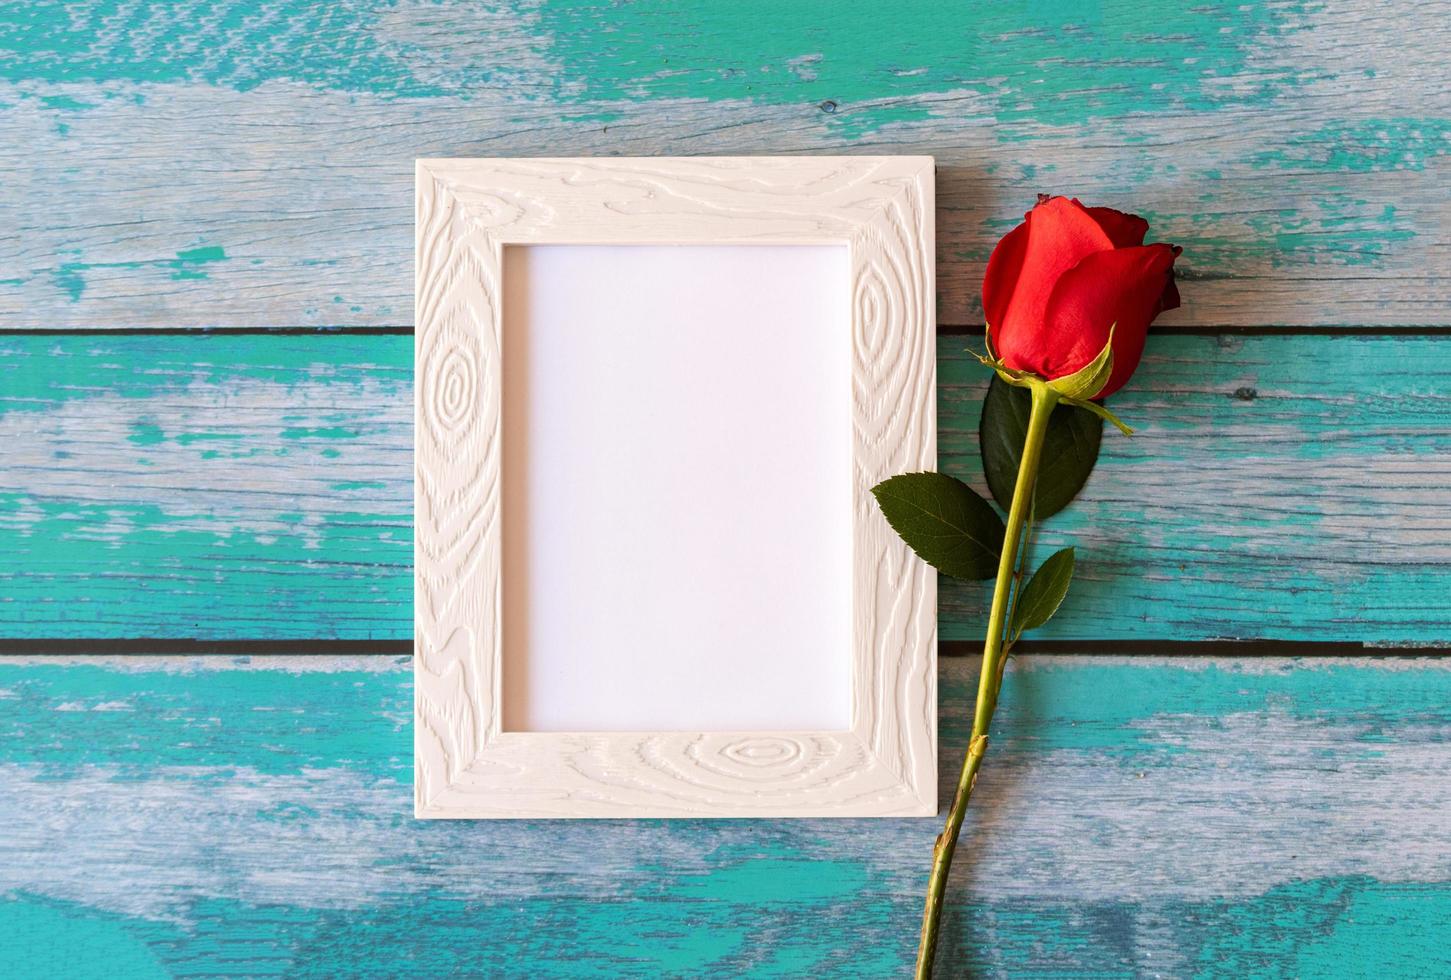 moldura em branco e rosas vermelhas sobre a mesa de madeira foto